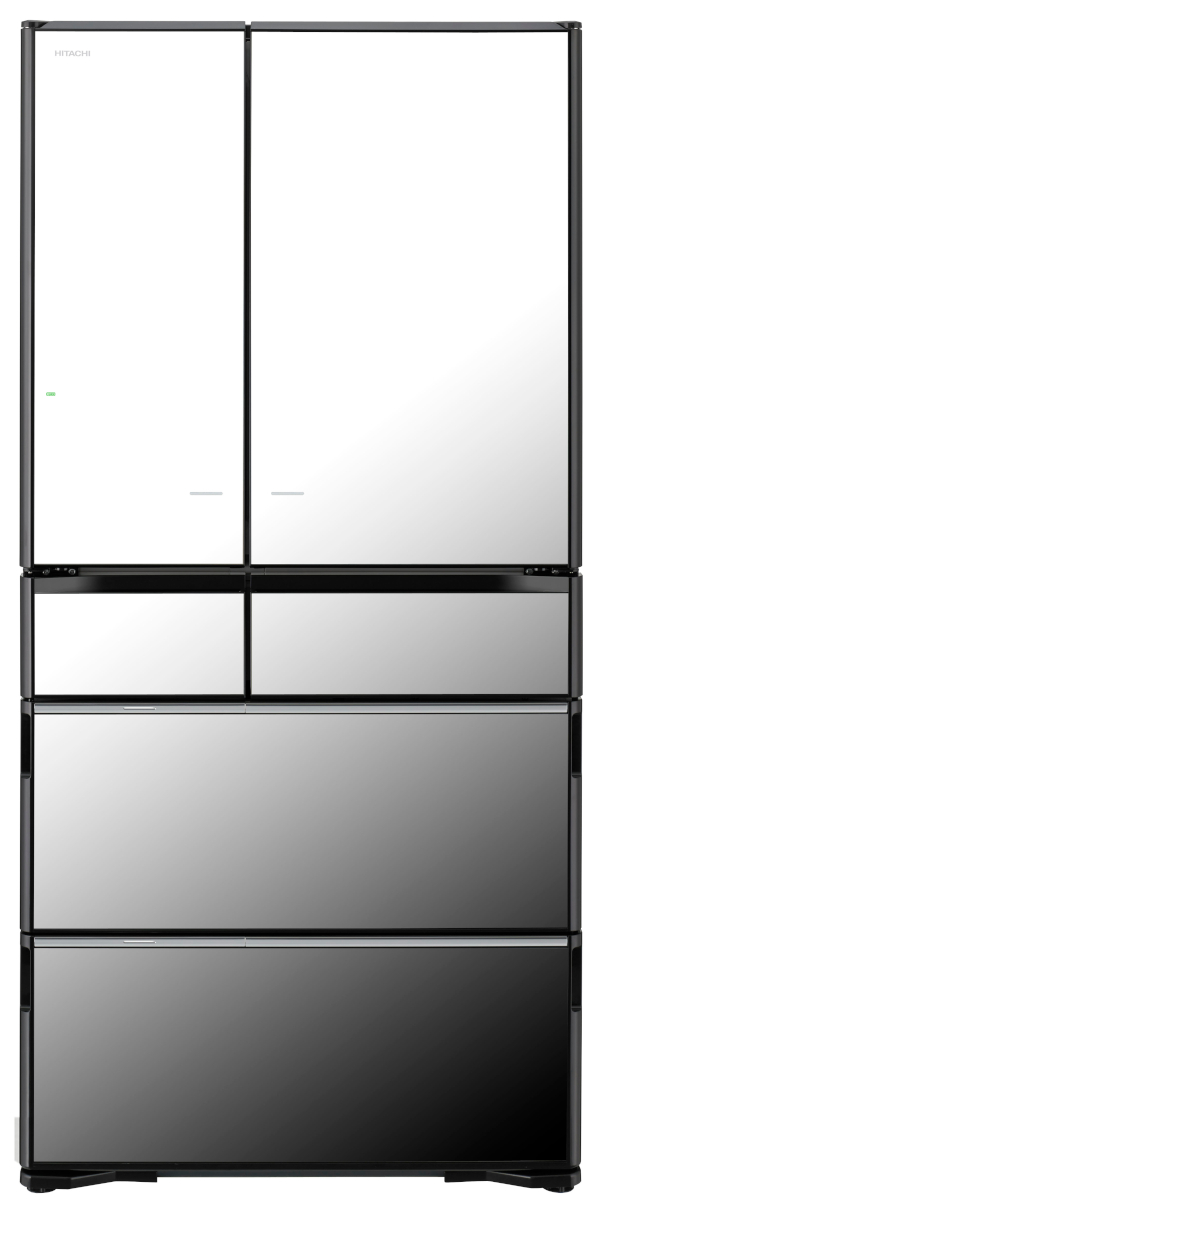 Squarerooms_Hitachi refrigerator